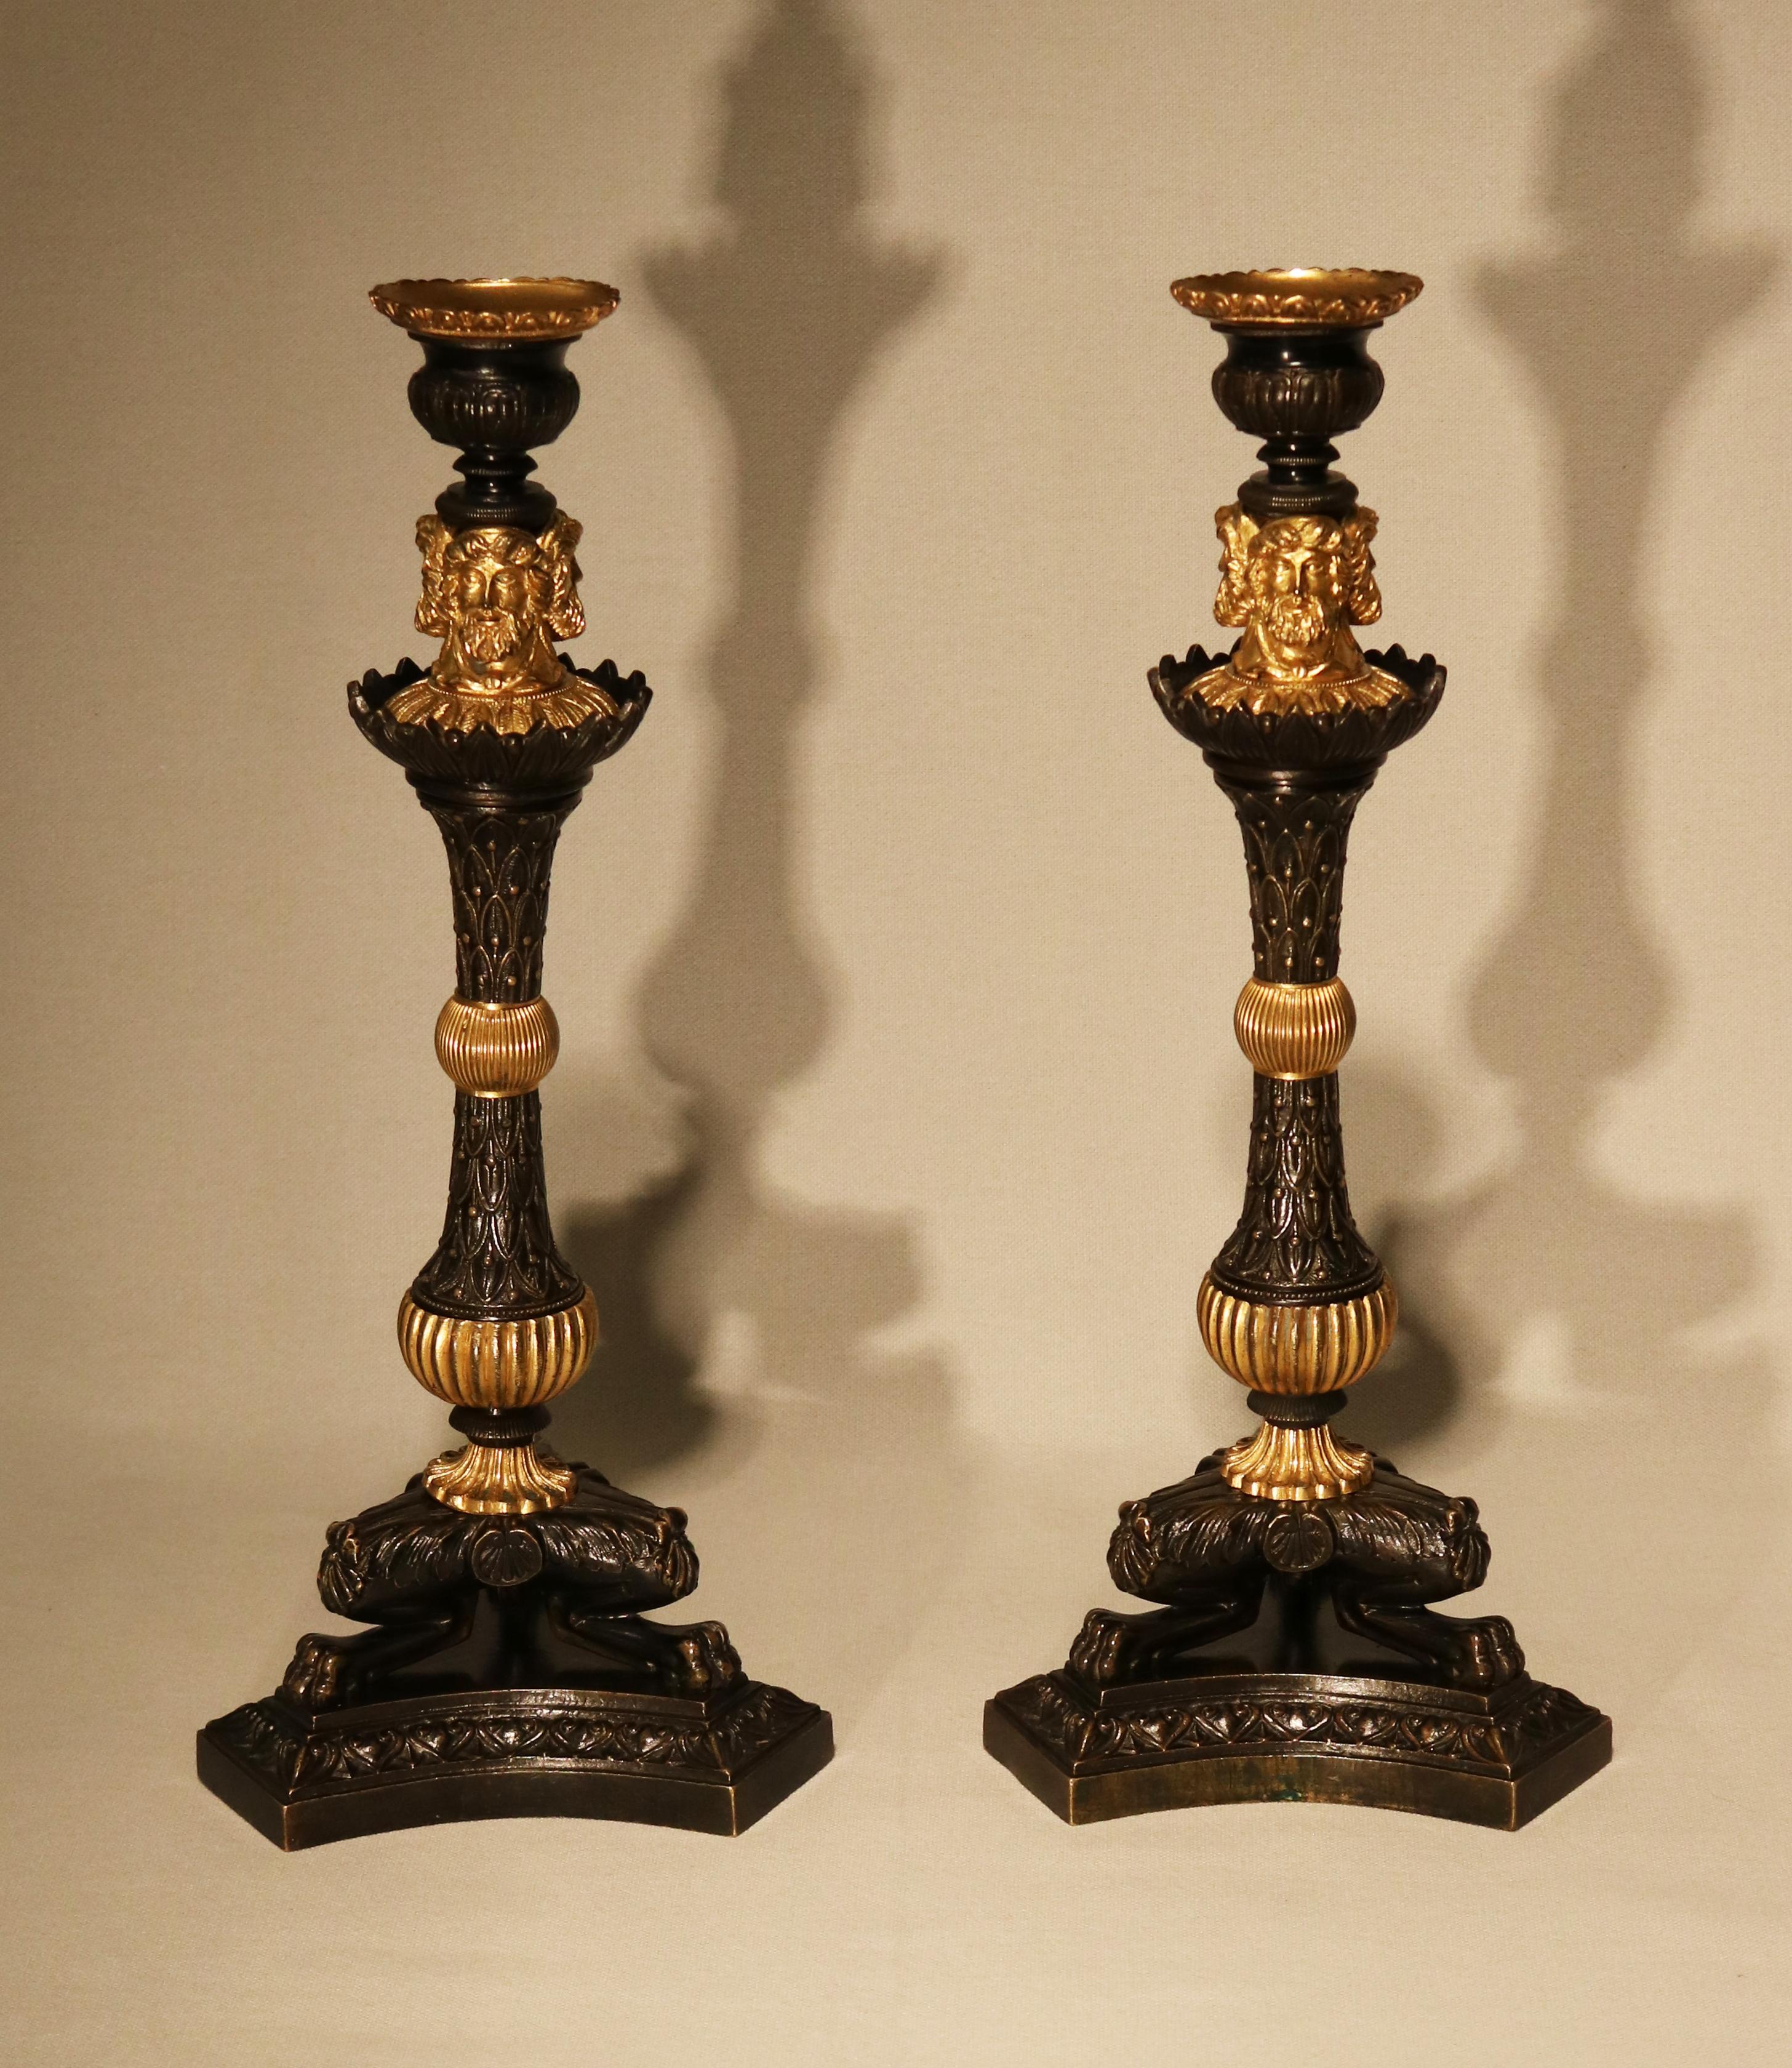 Paire de chandeliers en bronze et en bronze doré du début du XIXe siècle, avec des appliques en forme d'urne surmontées de trois têtes classiques surmontées de trois têtes classiques, sur des tiges effilées en forme de feuilles et de baies, centrées